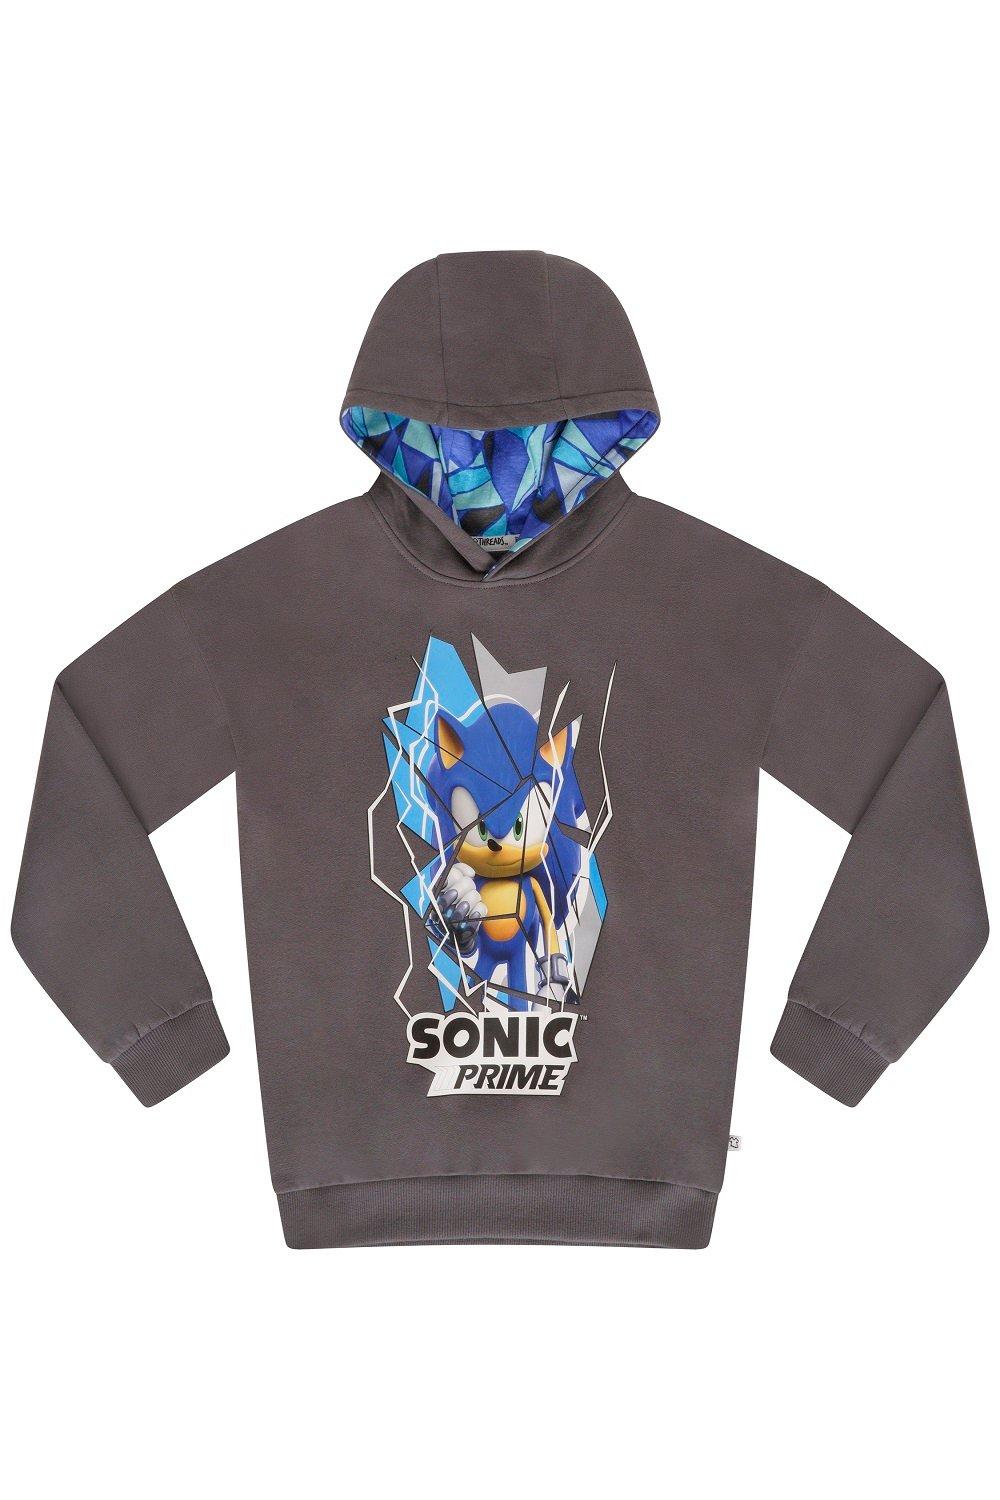 Sonic Prime Hoodie